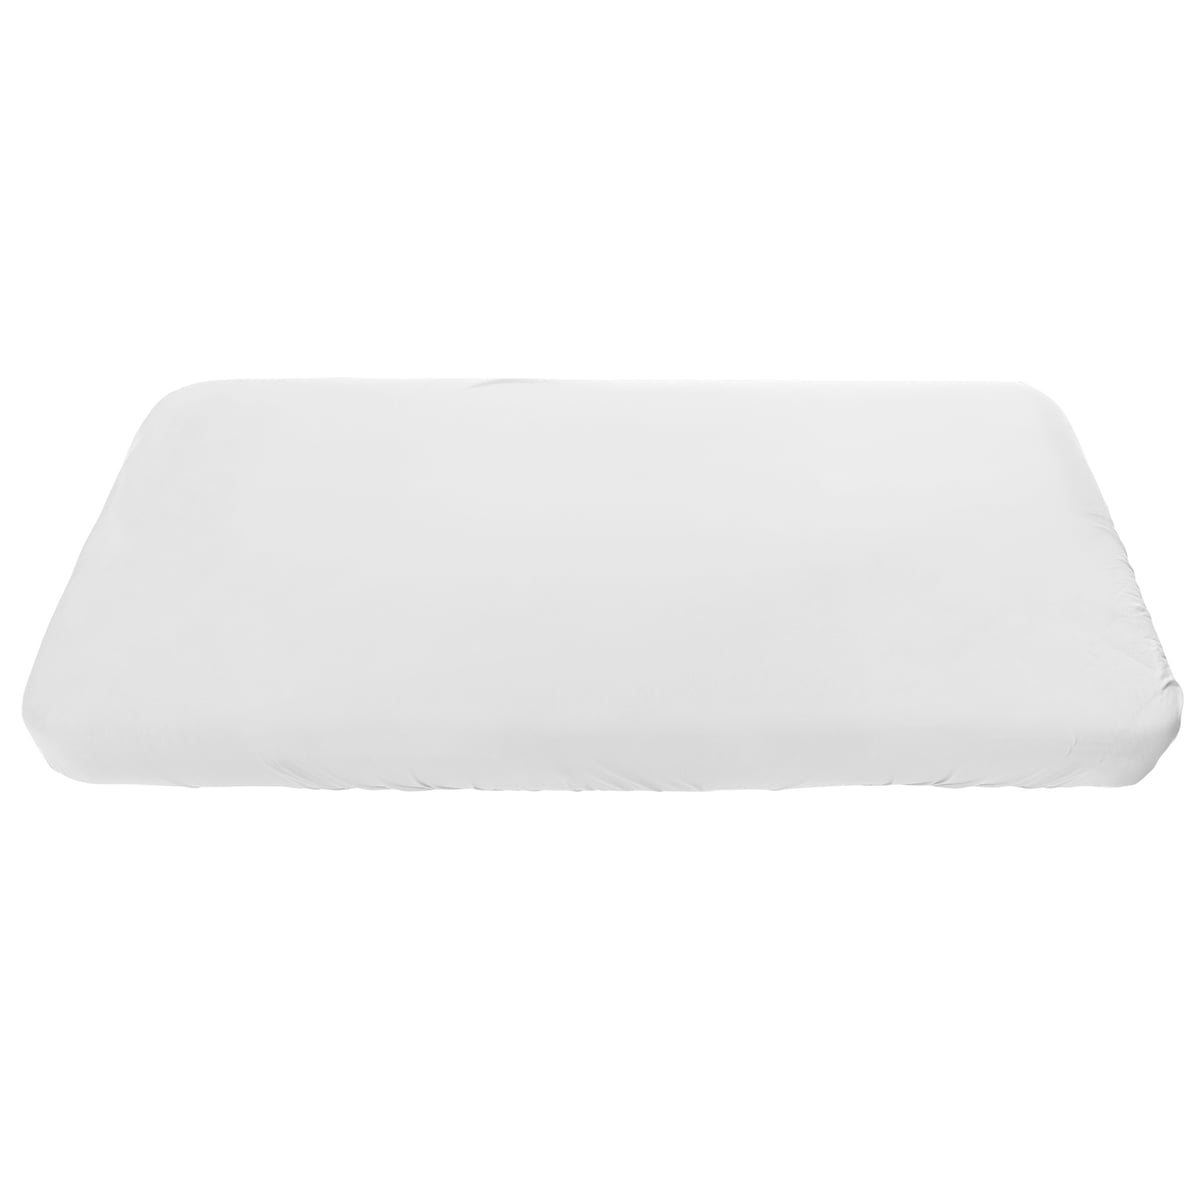 sebra - housse de protection pour le lit sebra lit junior & grow 162 x 88 cm, blanc